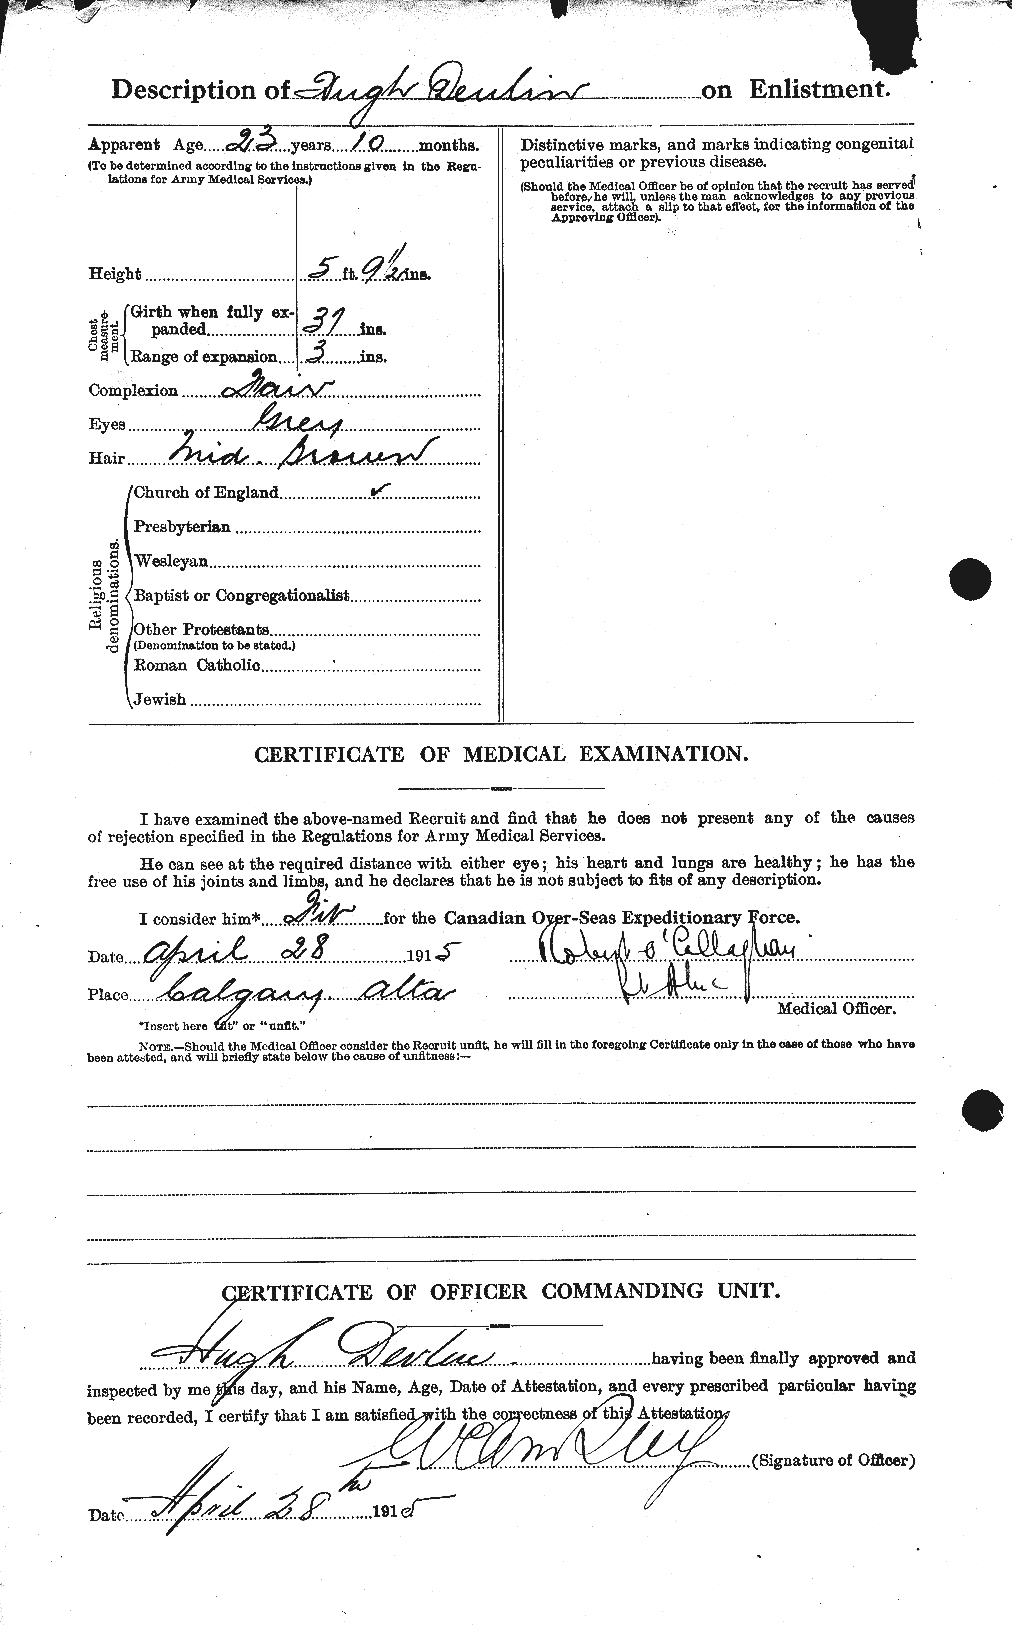 Dossiers du Personnel de la Première Guerre mondiale - CEC 292184b